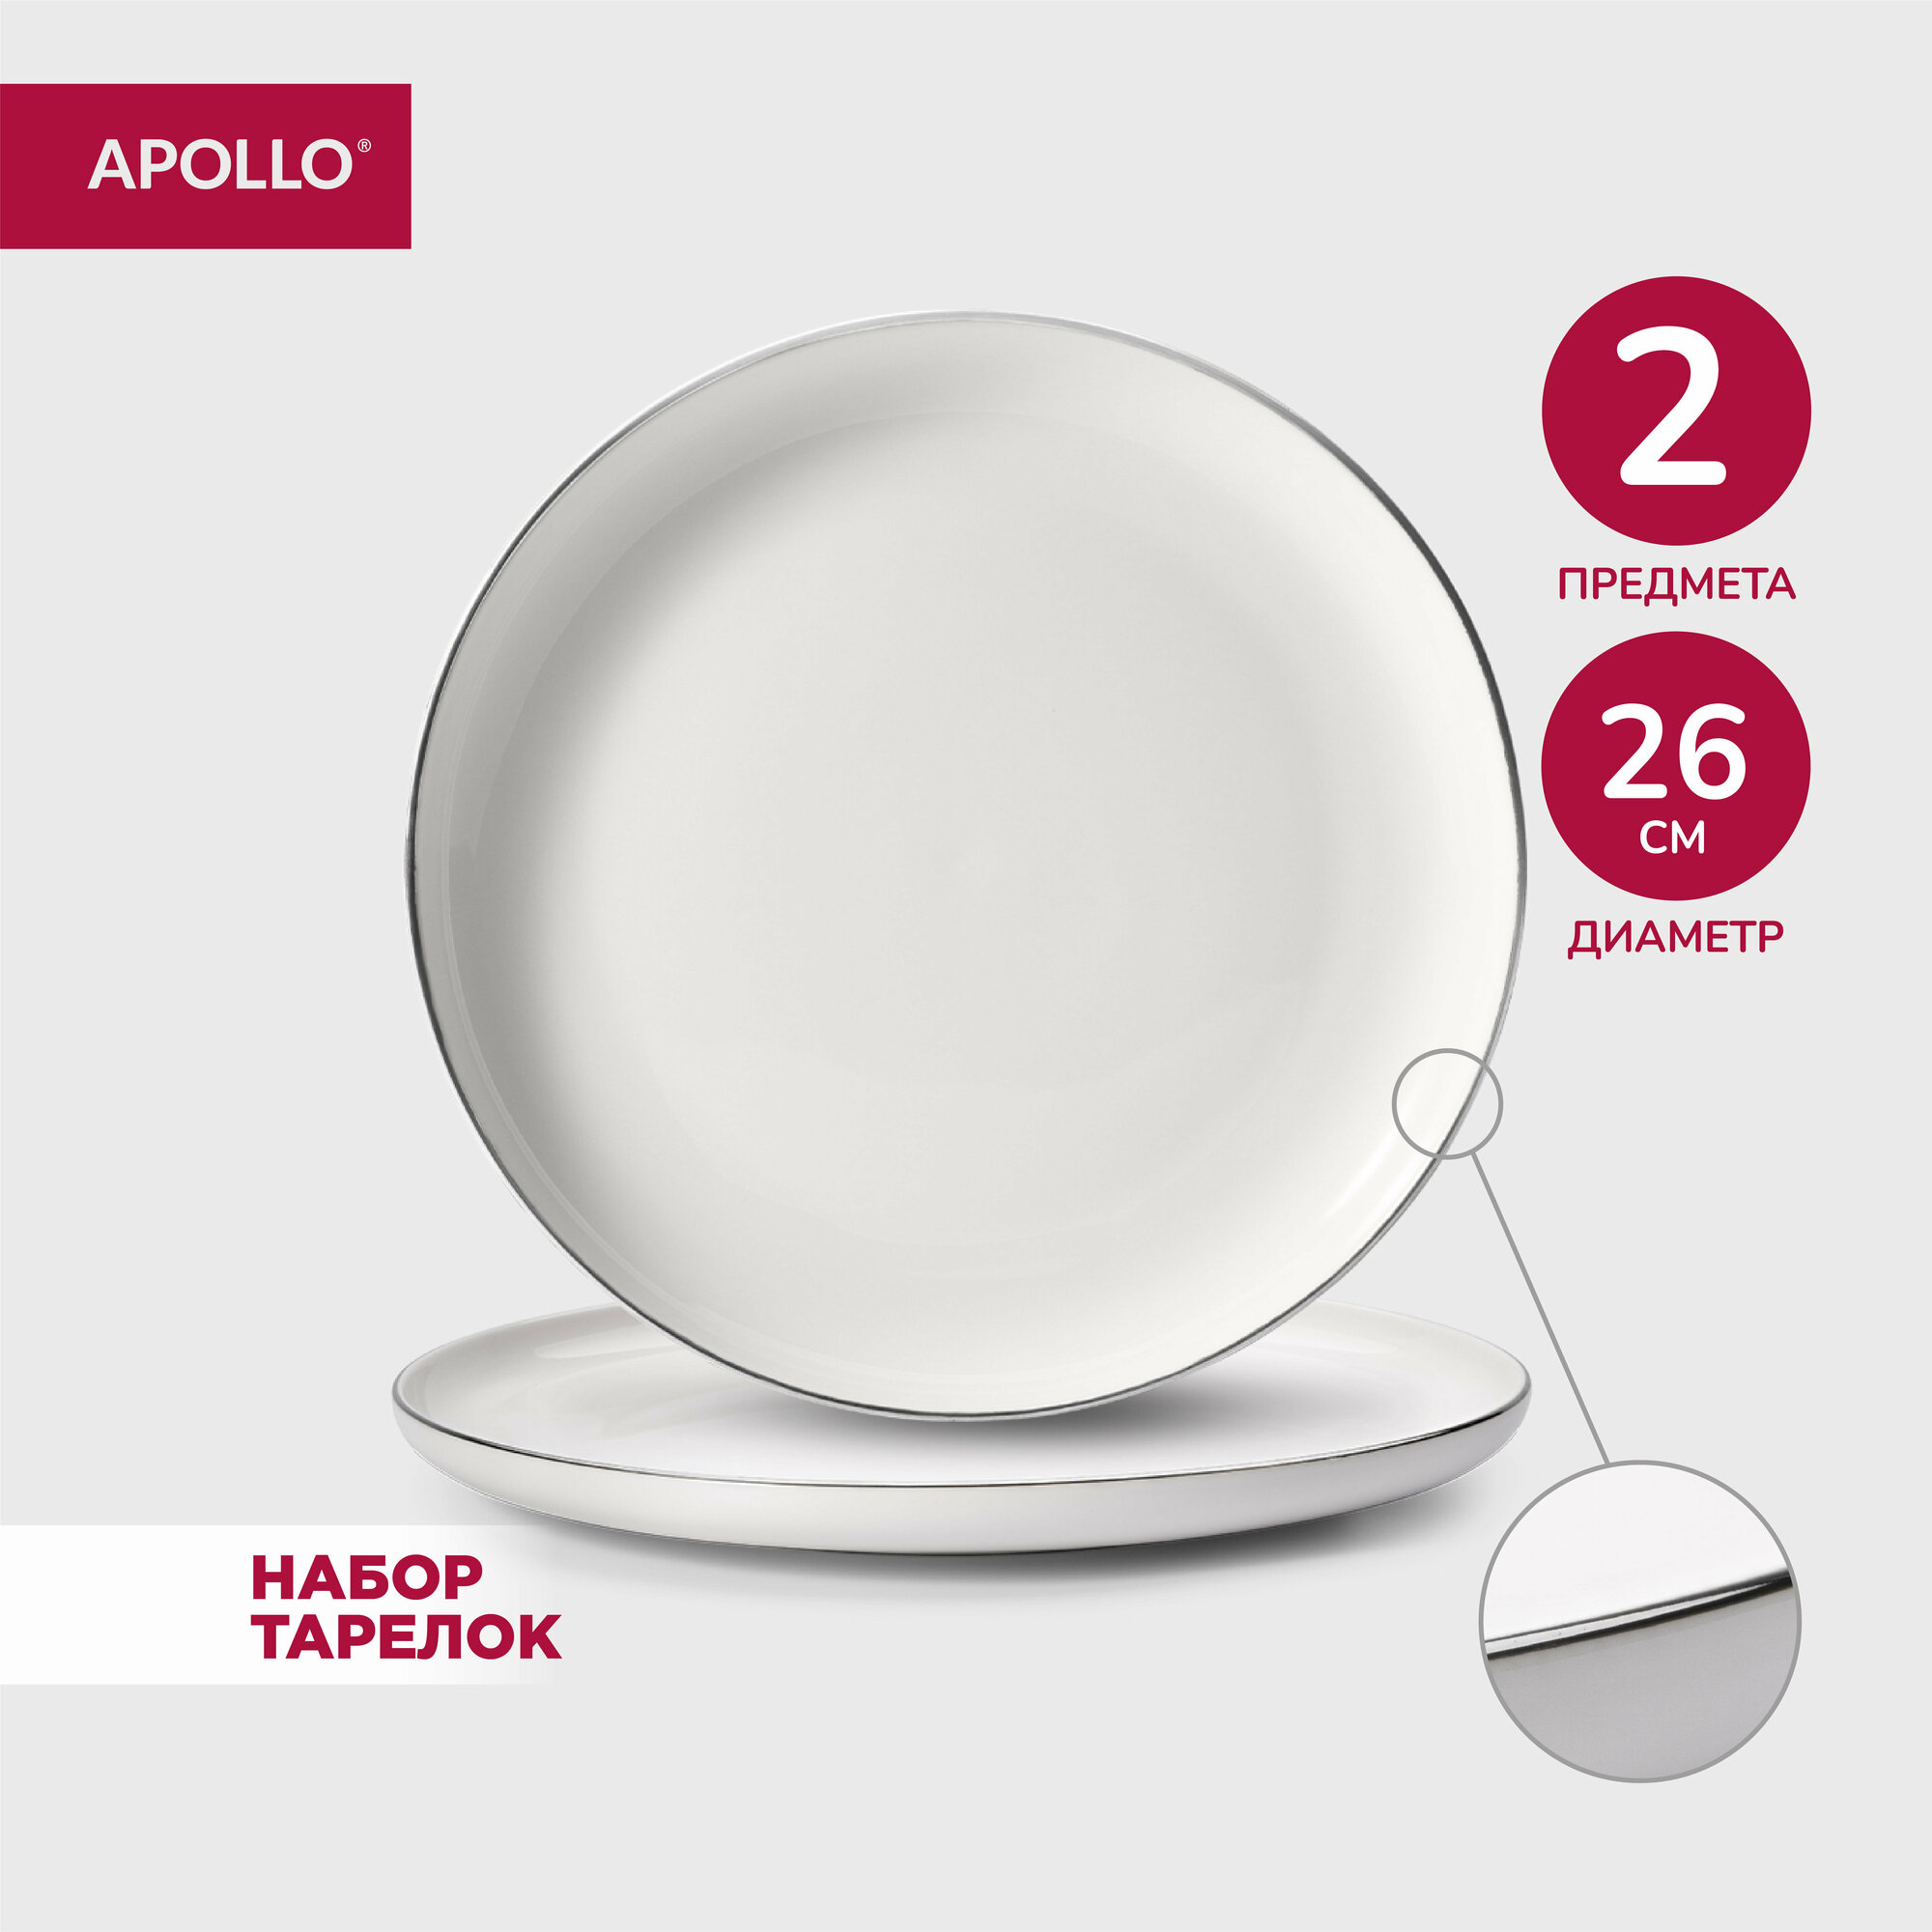 Тарелка фарфоровая обеденная, набор для сервировки стола APOLLO "Cintargo", 26 см, 2 предмета